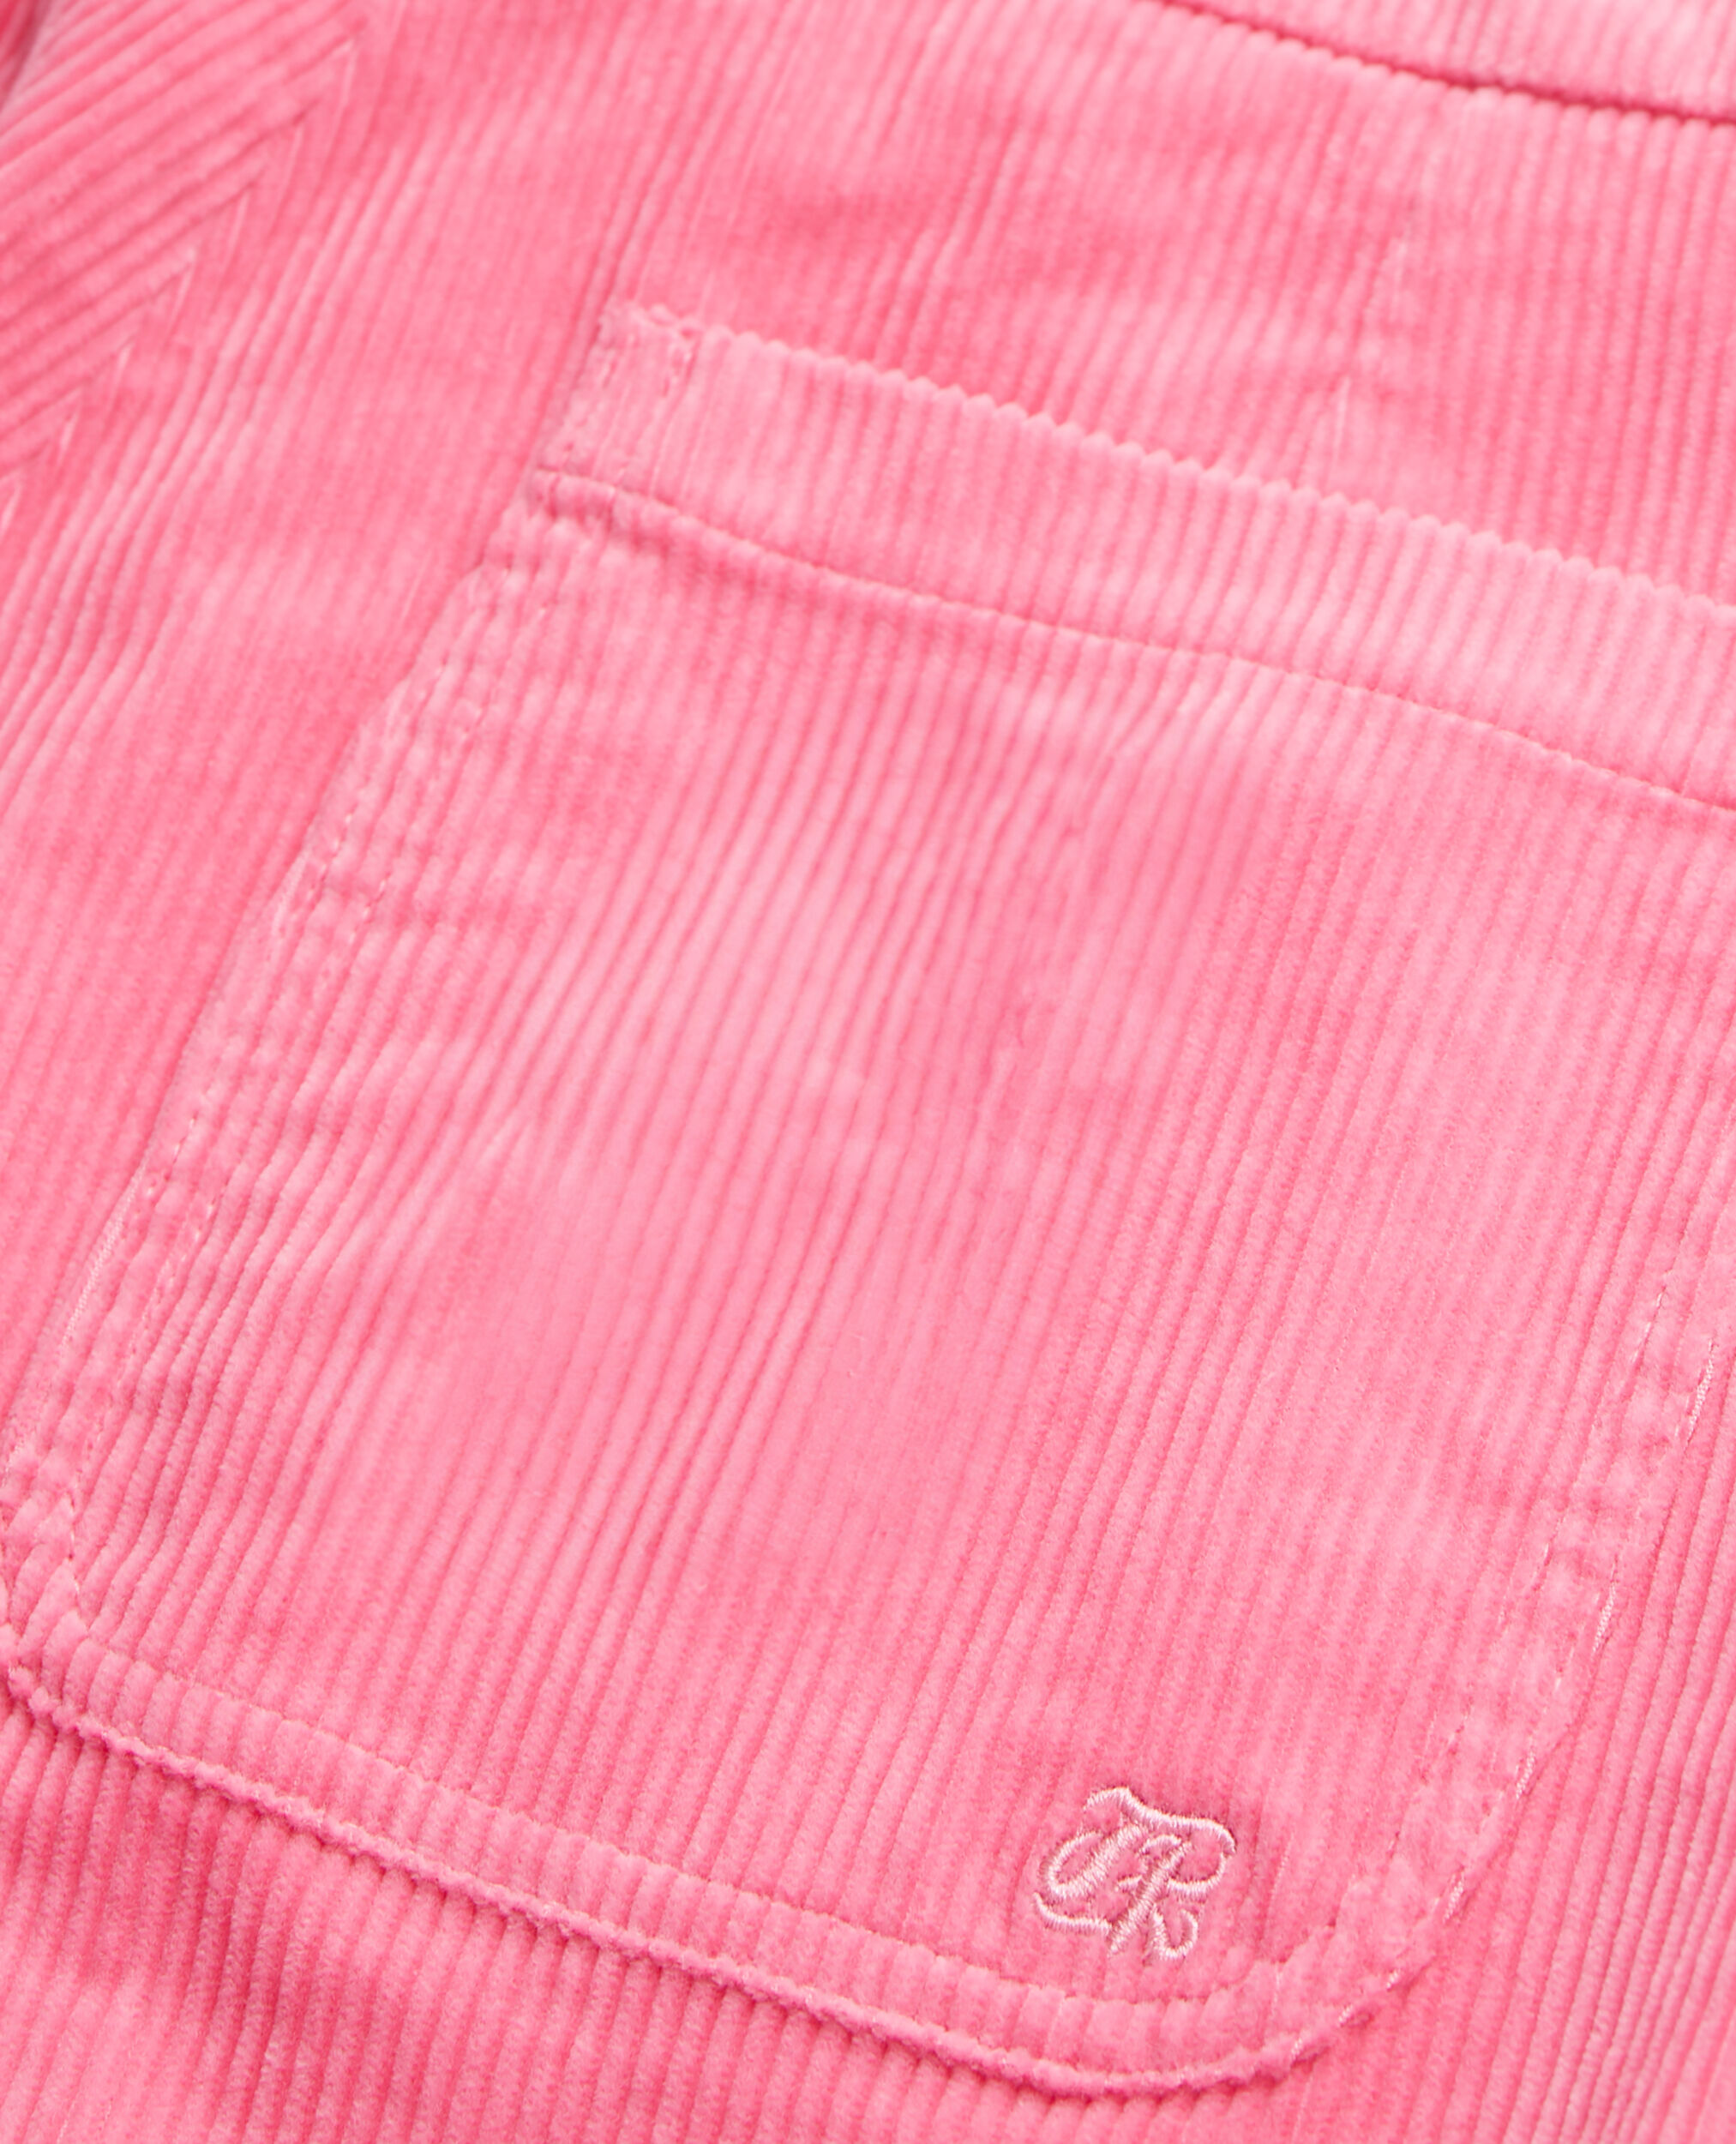 Pantalón rosa terciopelo acanalado, OLD PINK, hi-res image number null